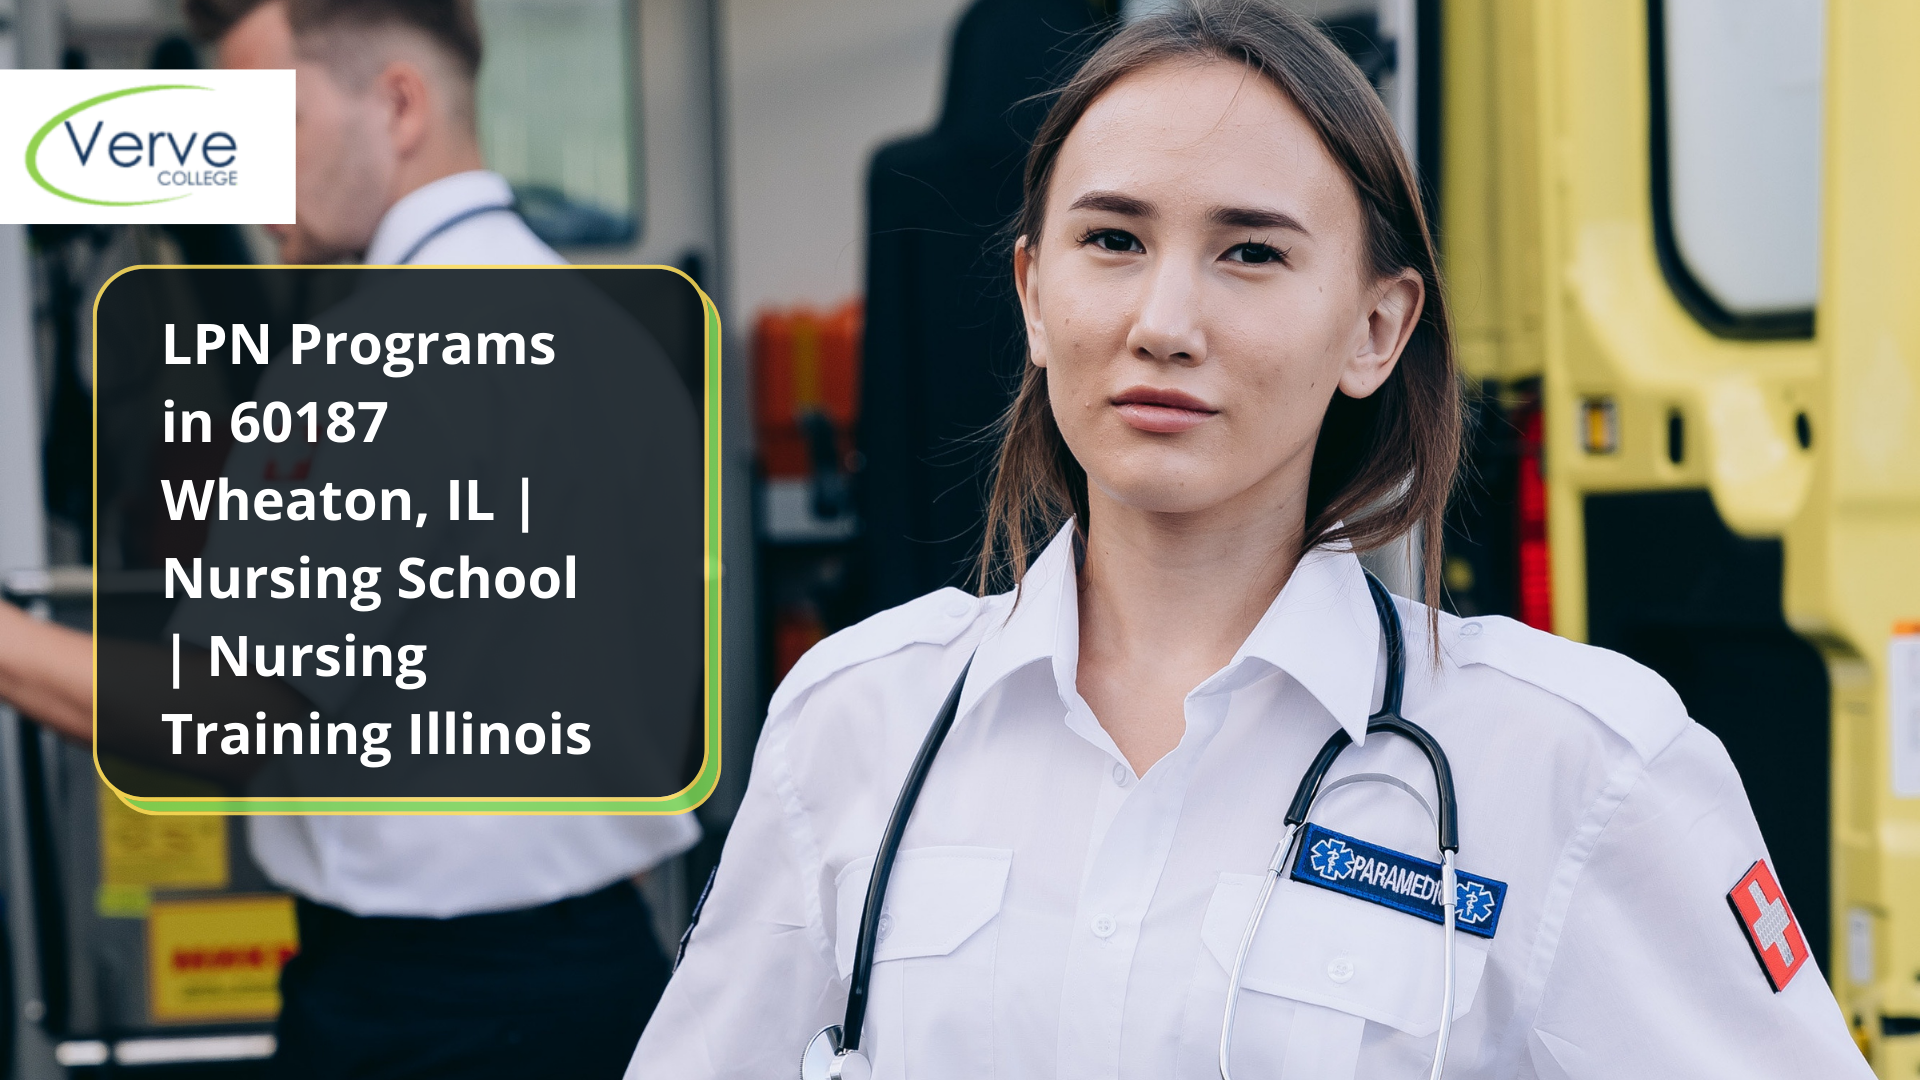 LPN Programs in 60187 Wheaton, IL | Nursing School | Nursing Training Illinois